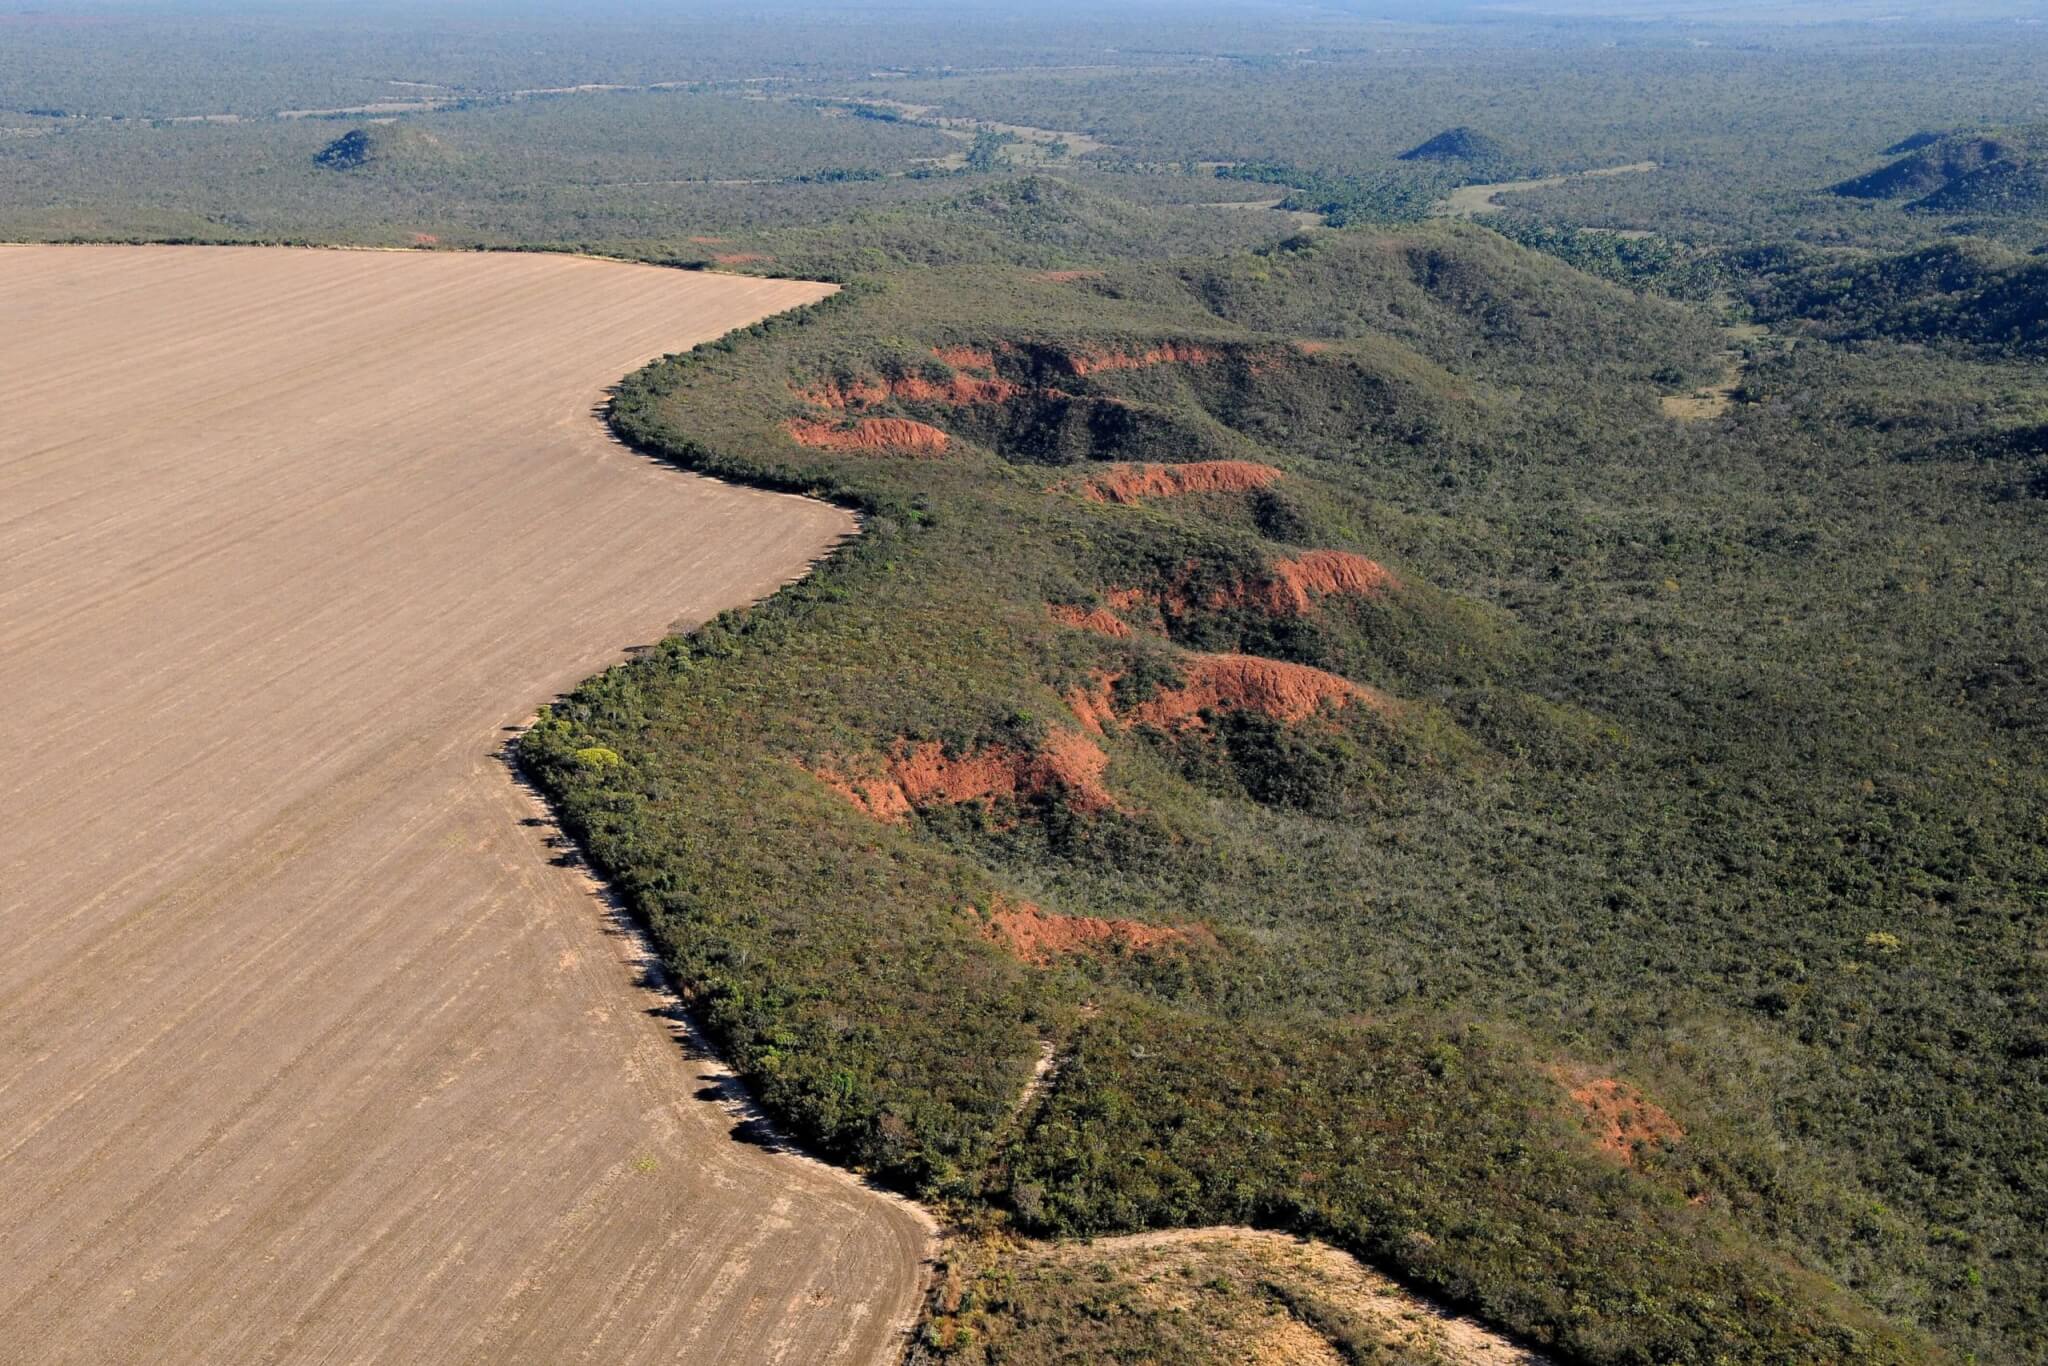 Desmatamento Cerrado Adriano Gambarini WWF Brazil